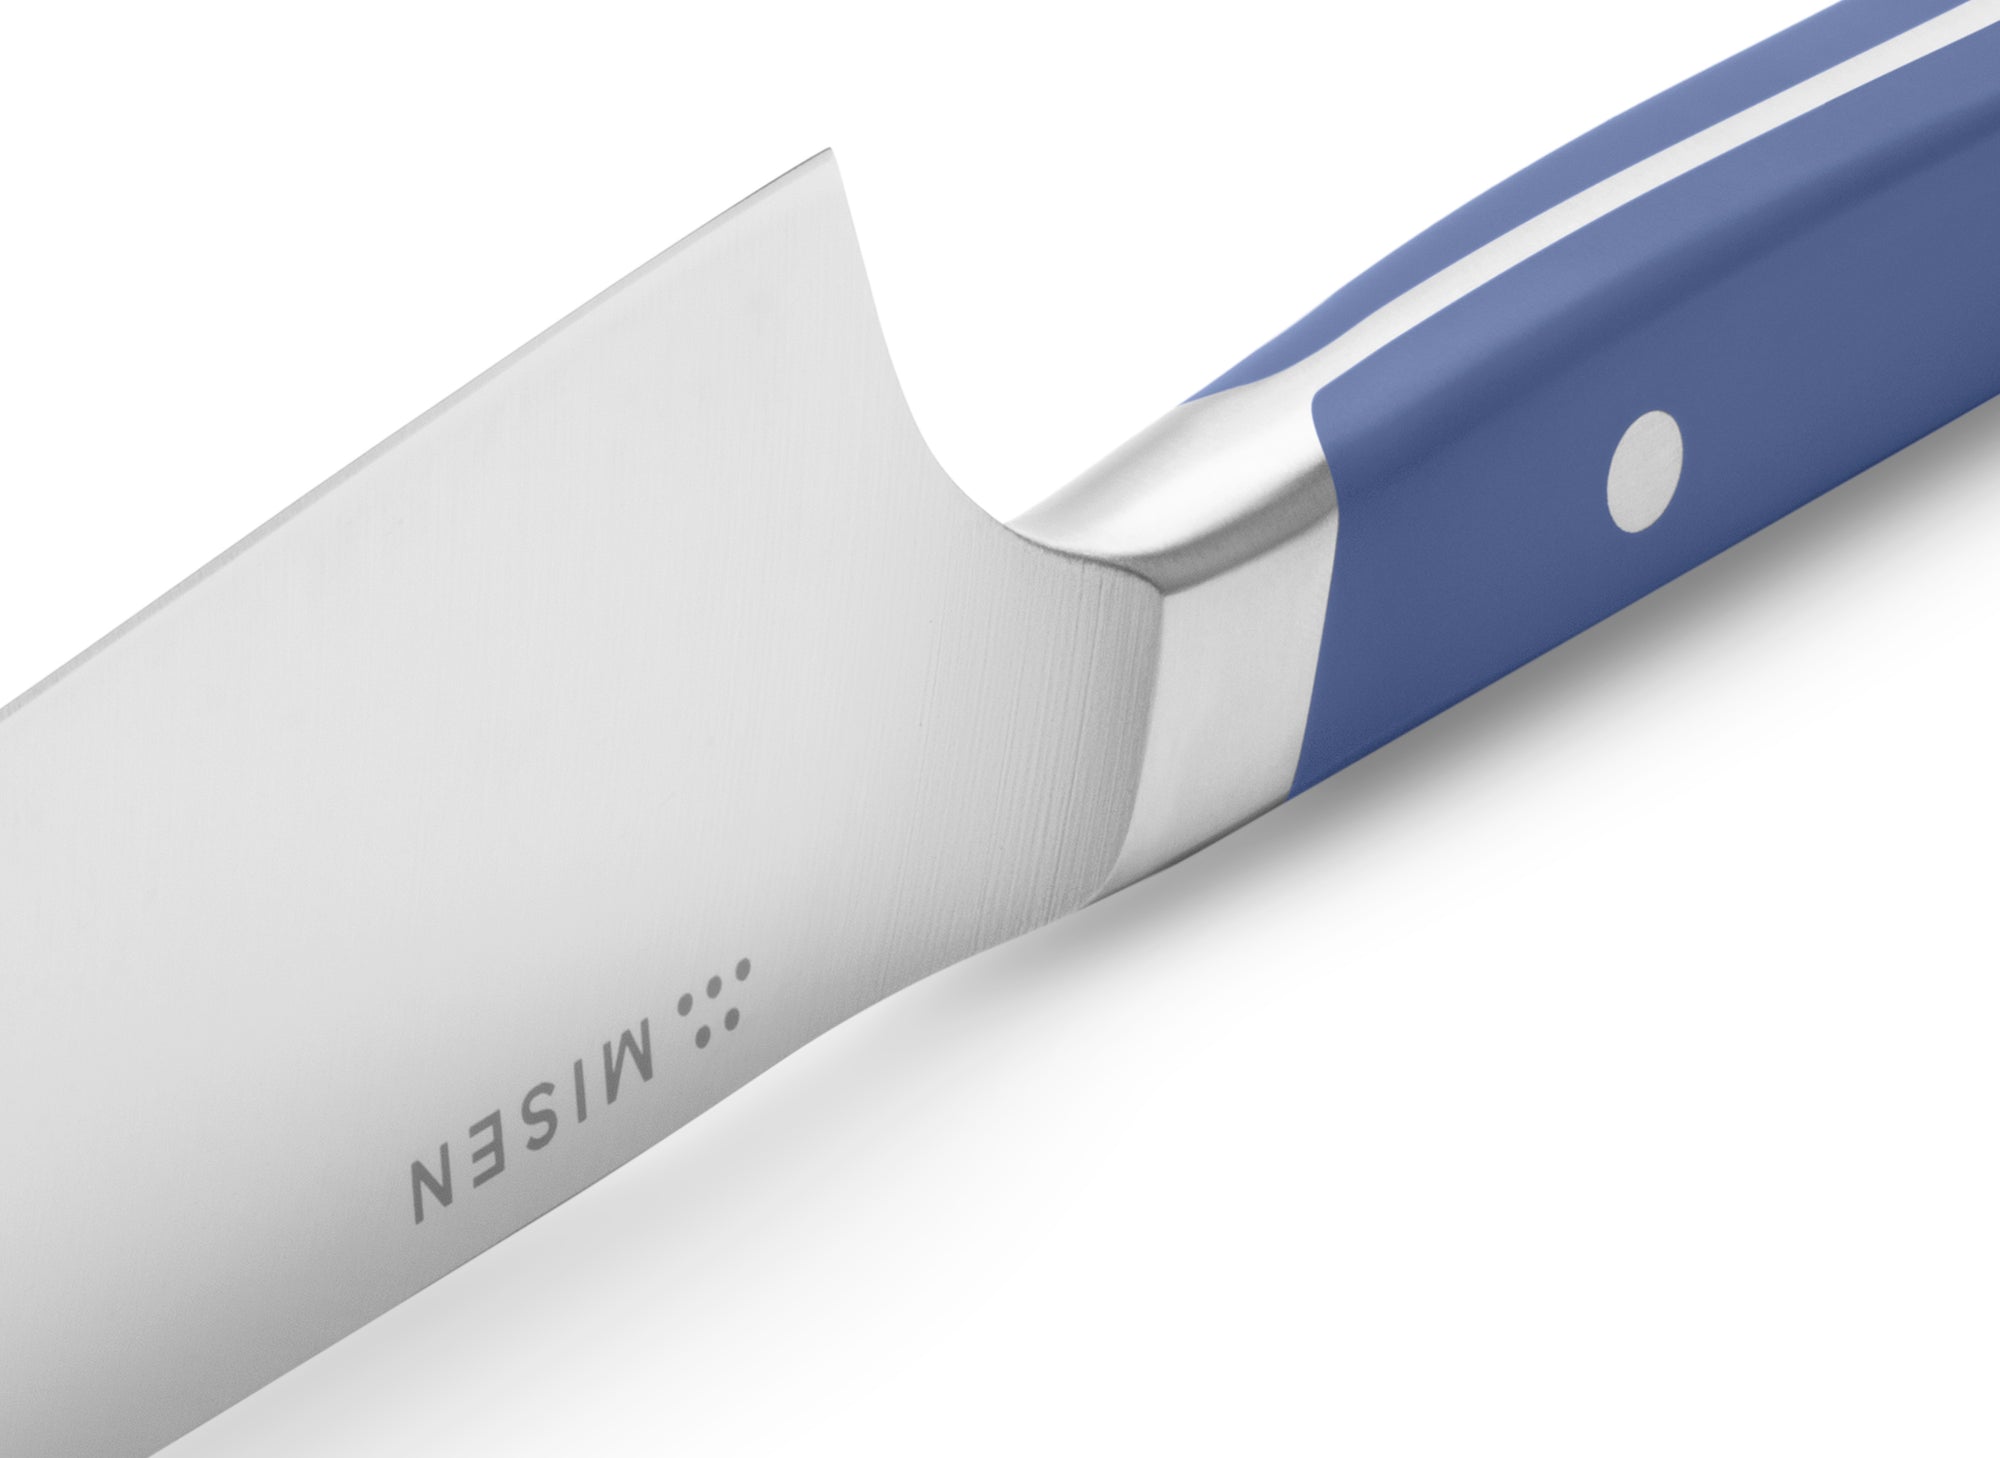 Heel of Misen Santoku Knife in blue